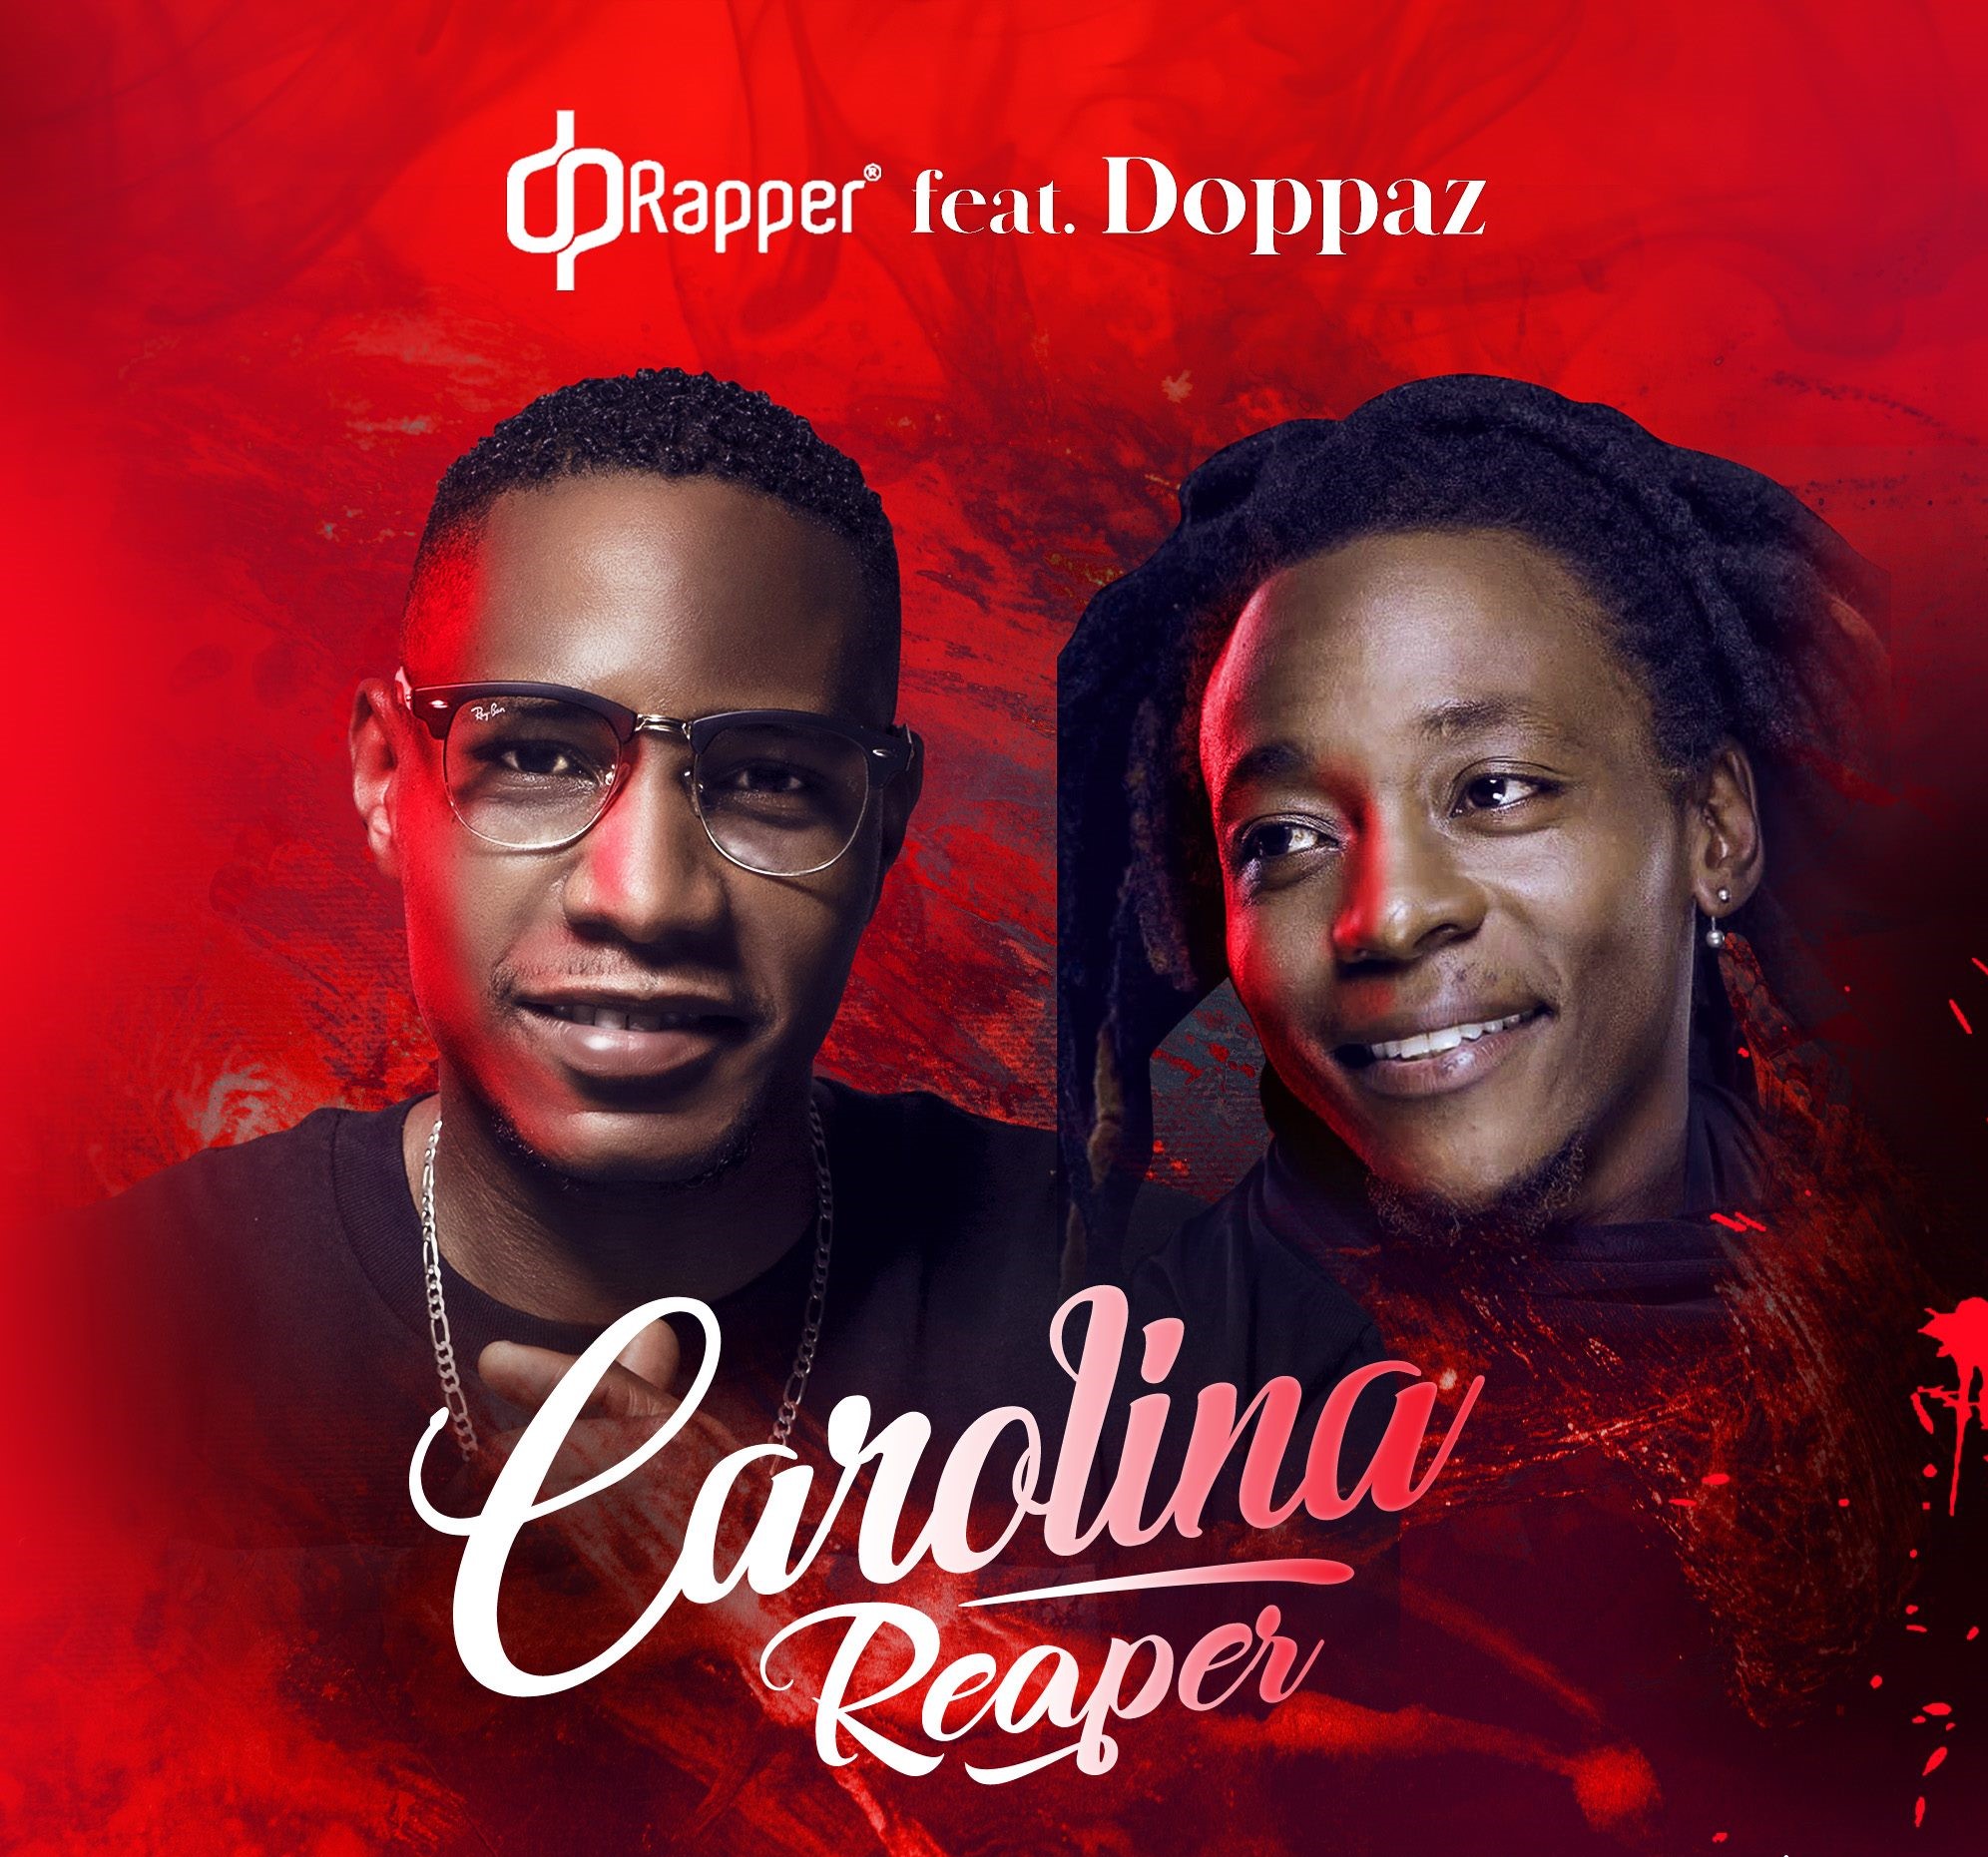 DP Rapper – Carolina Reaper (feat. Doppaz)